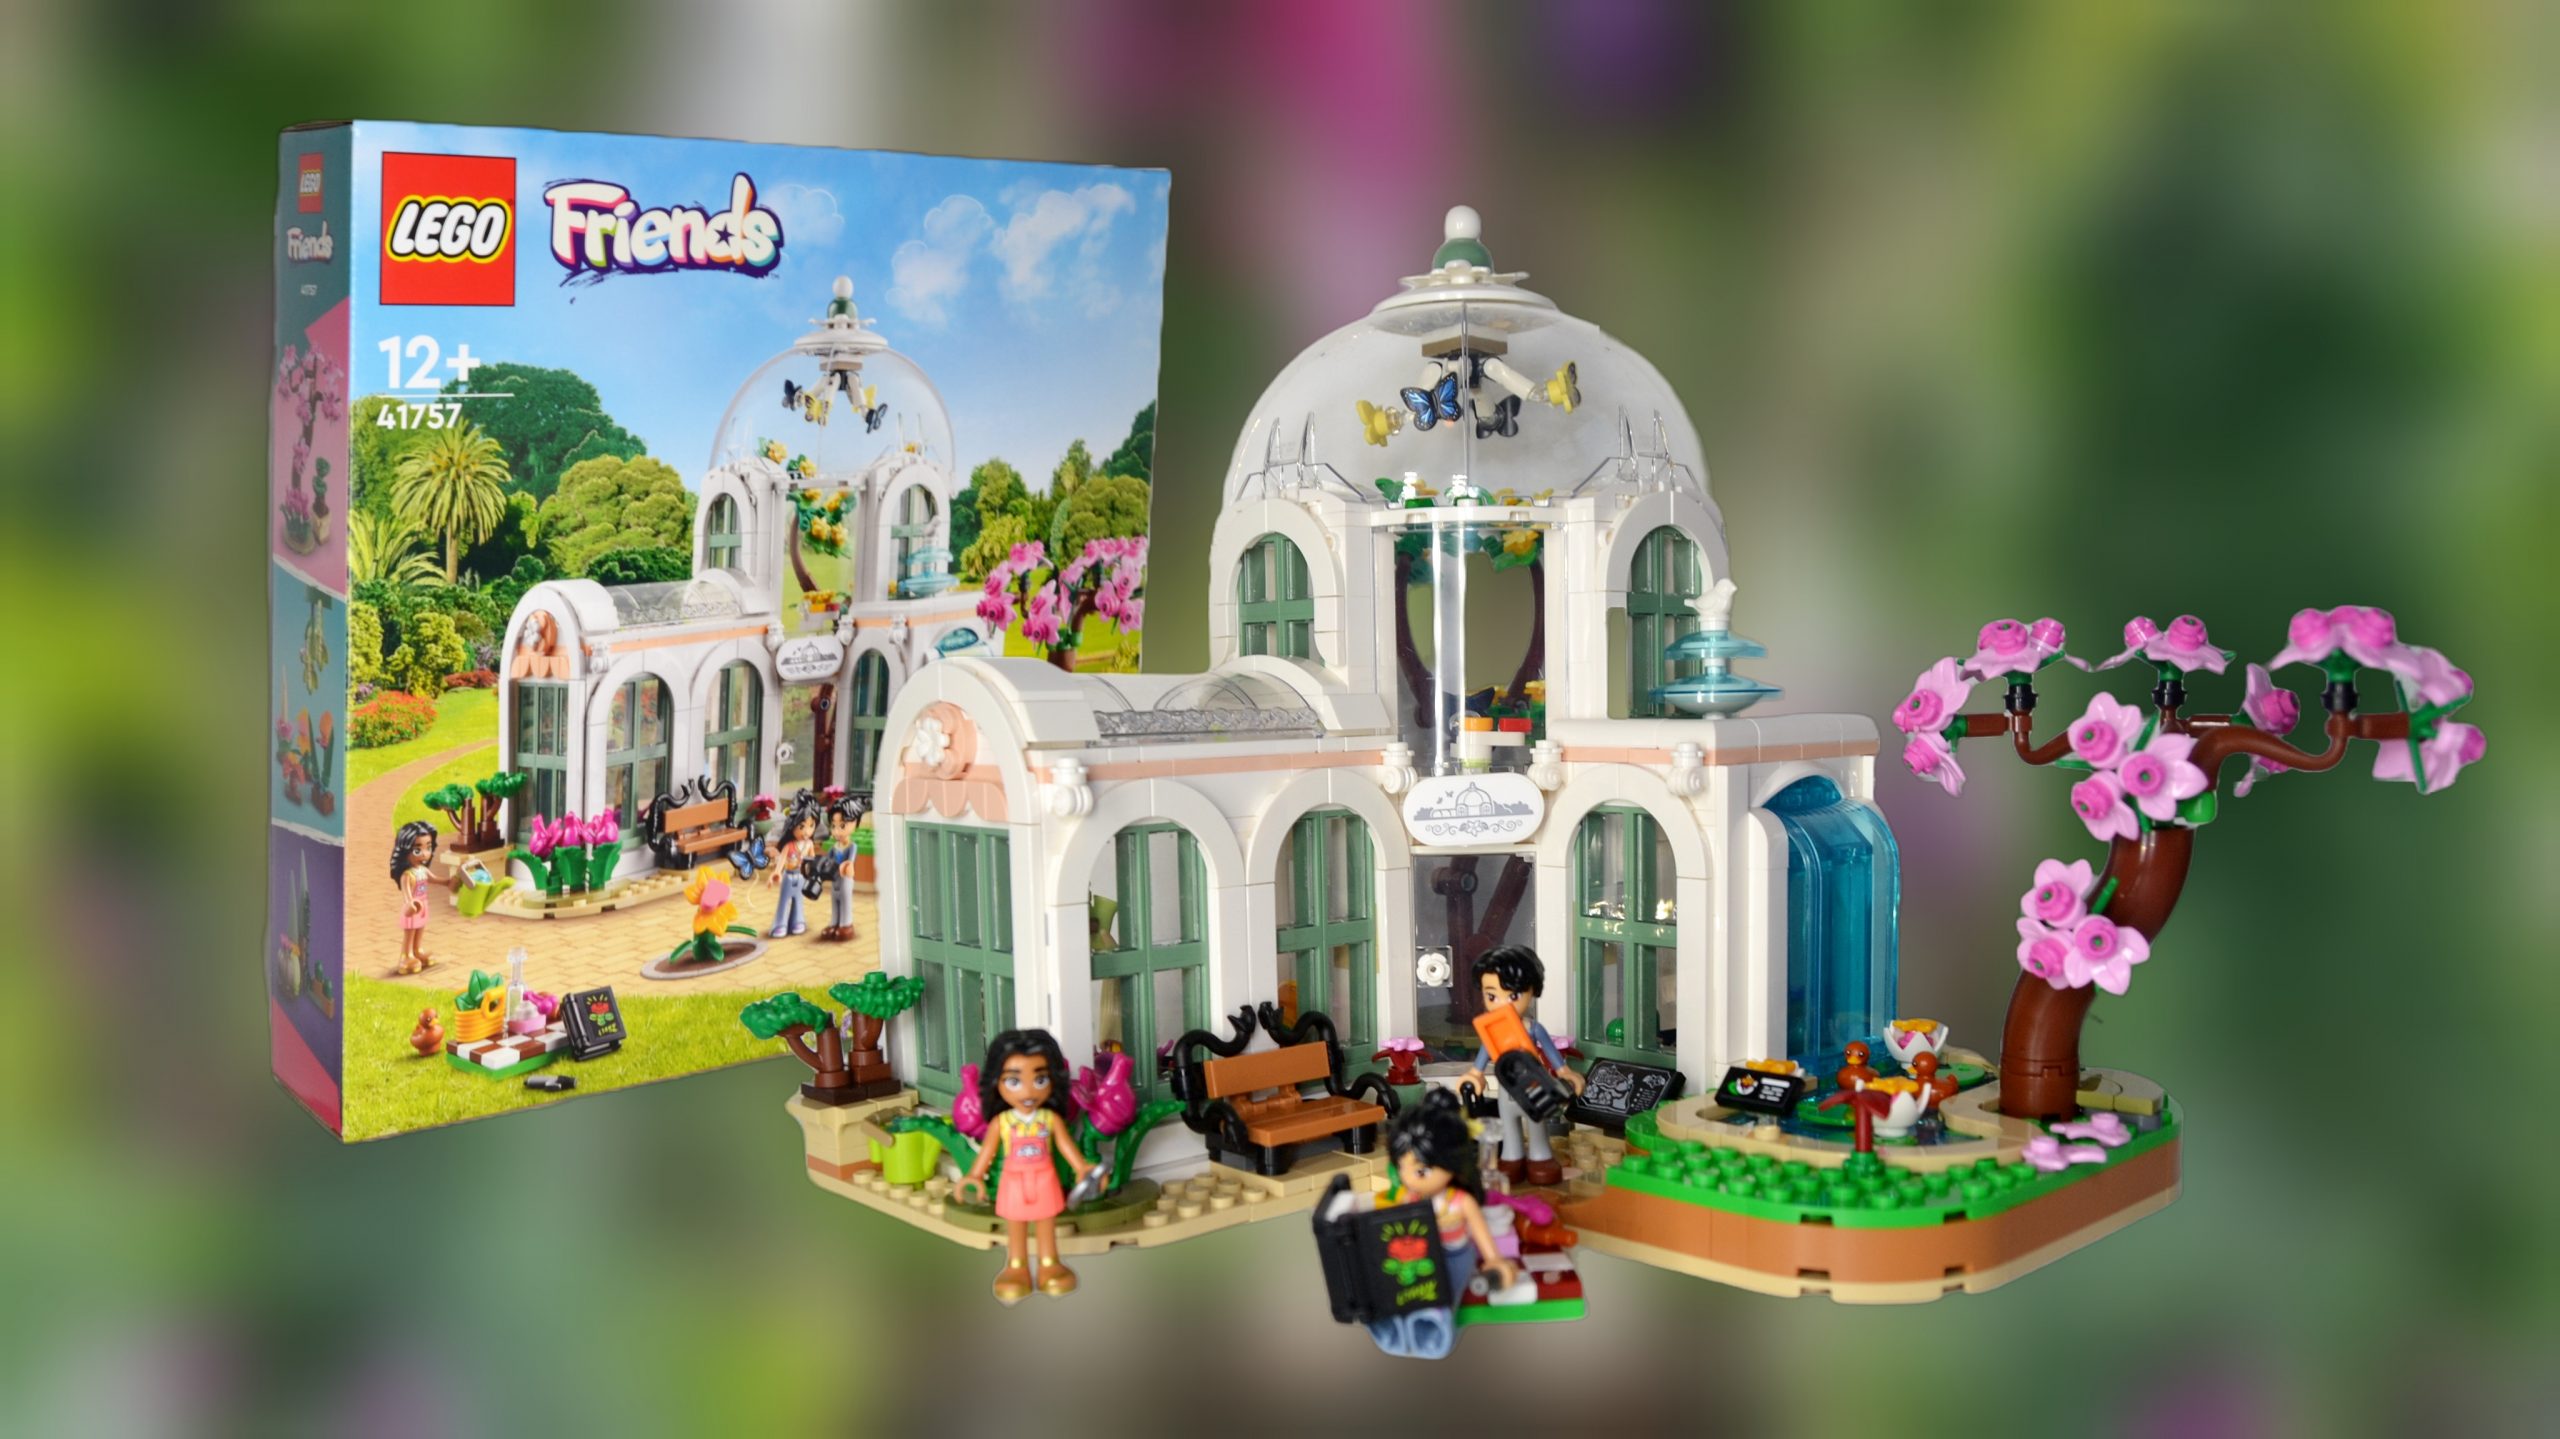 binding tør Stilk LEGO Friends Botanical Garden (41757) Review – The Brick Post!